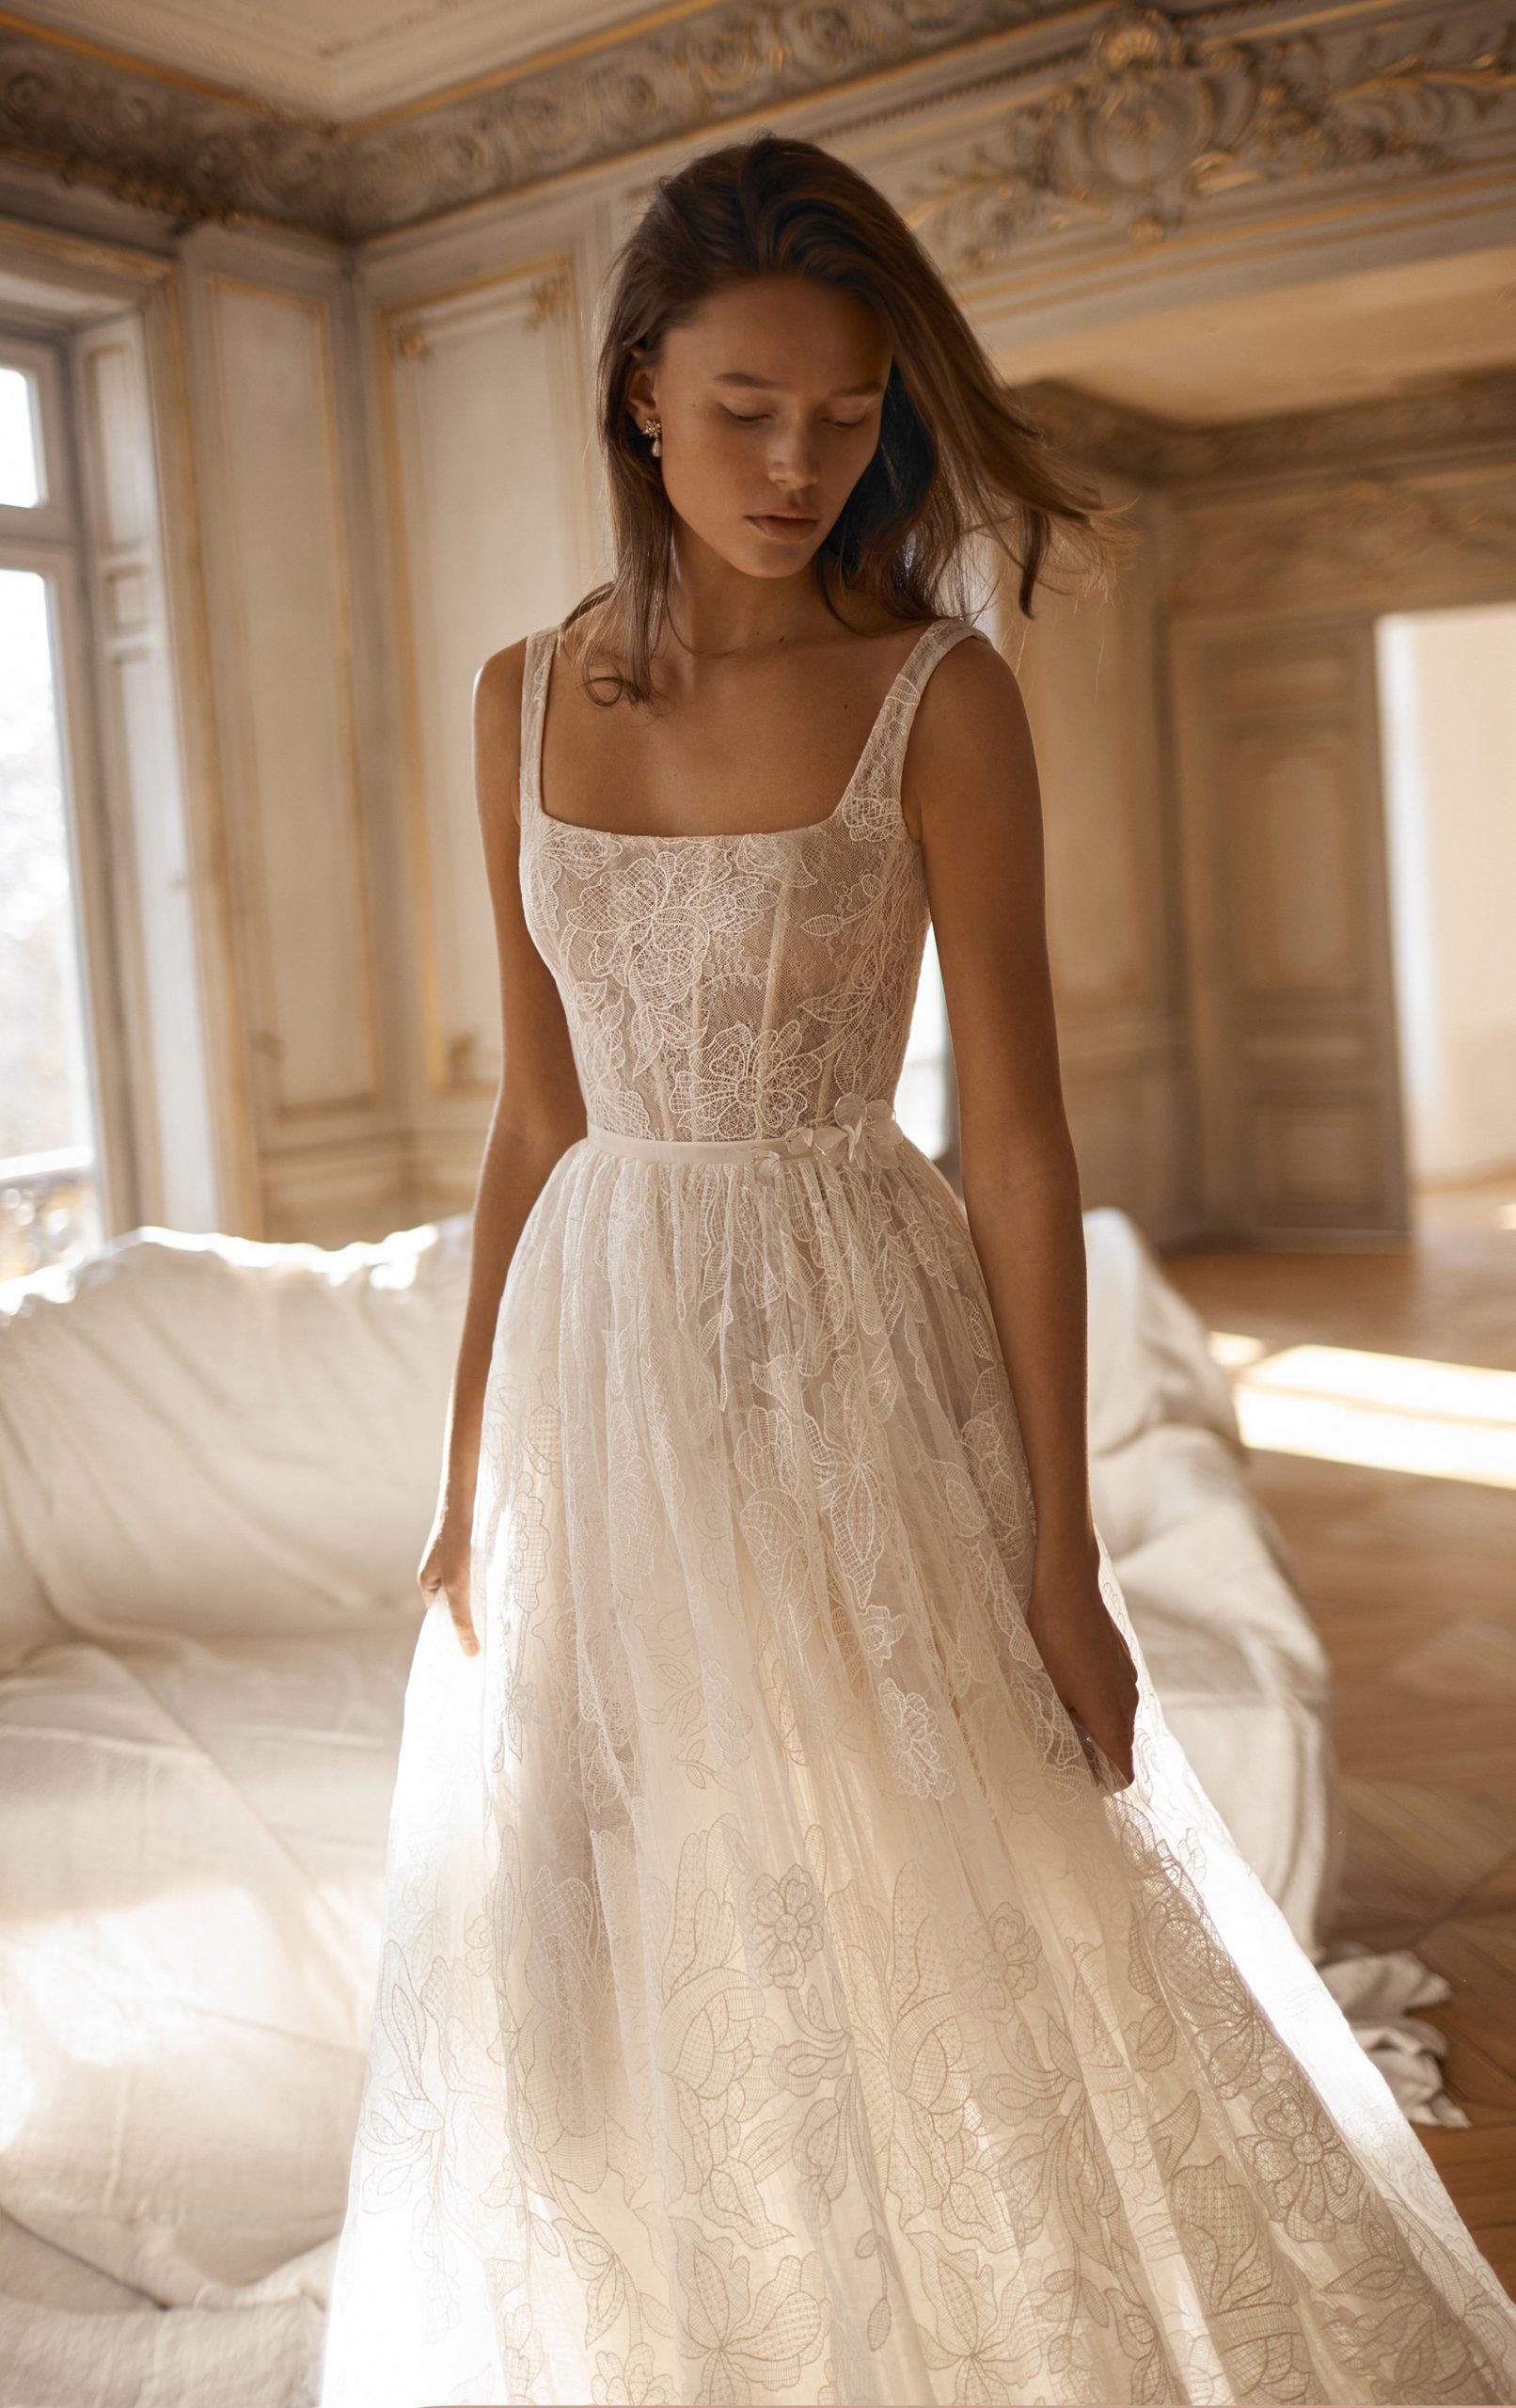 Floral Wedding Dresses & Gowns | Online Bridal Shop – Olivia Bottega